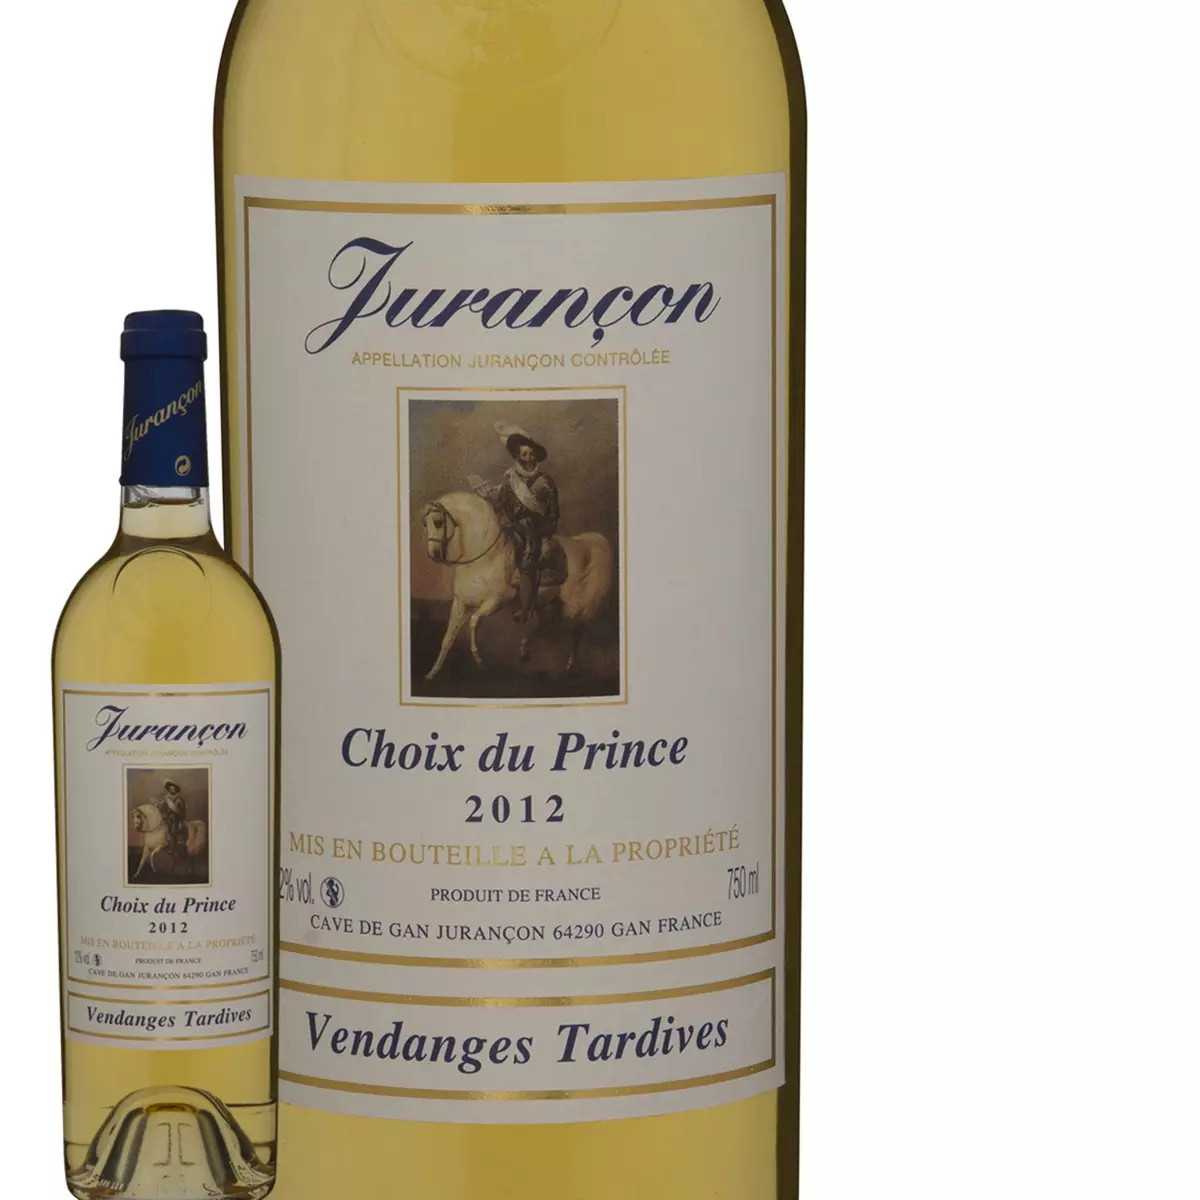 Choix Du Prince Jurancon Vendanges tardives 2012